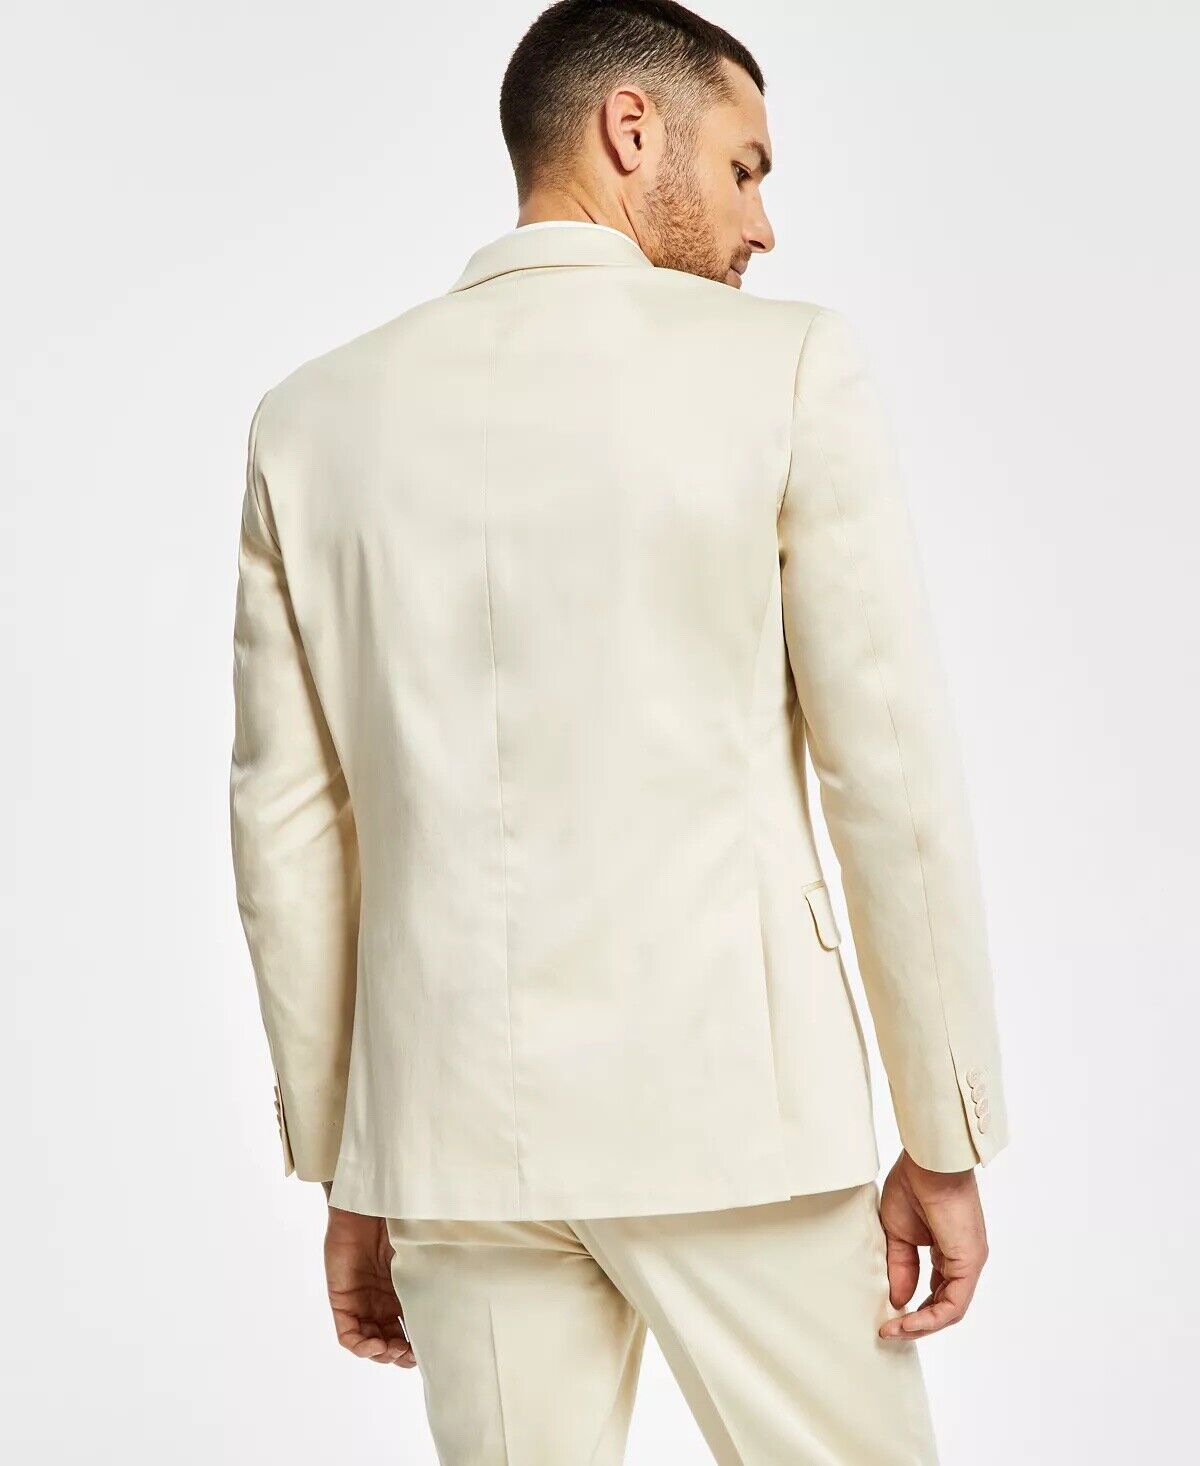 Alfani Men's Slim-Fit Solid Cream Cotton Suit Jacket Cream 44S